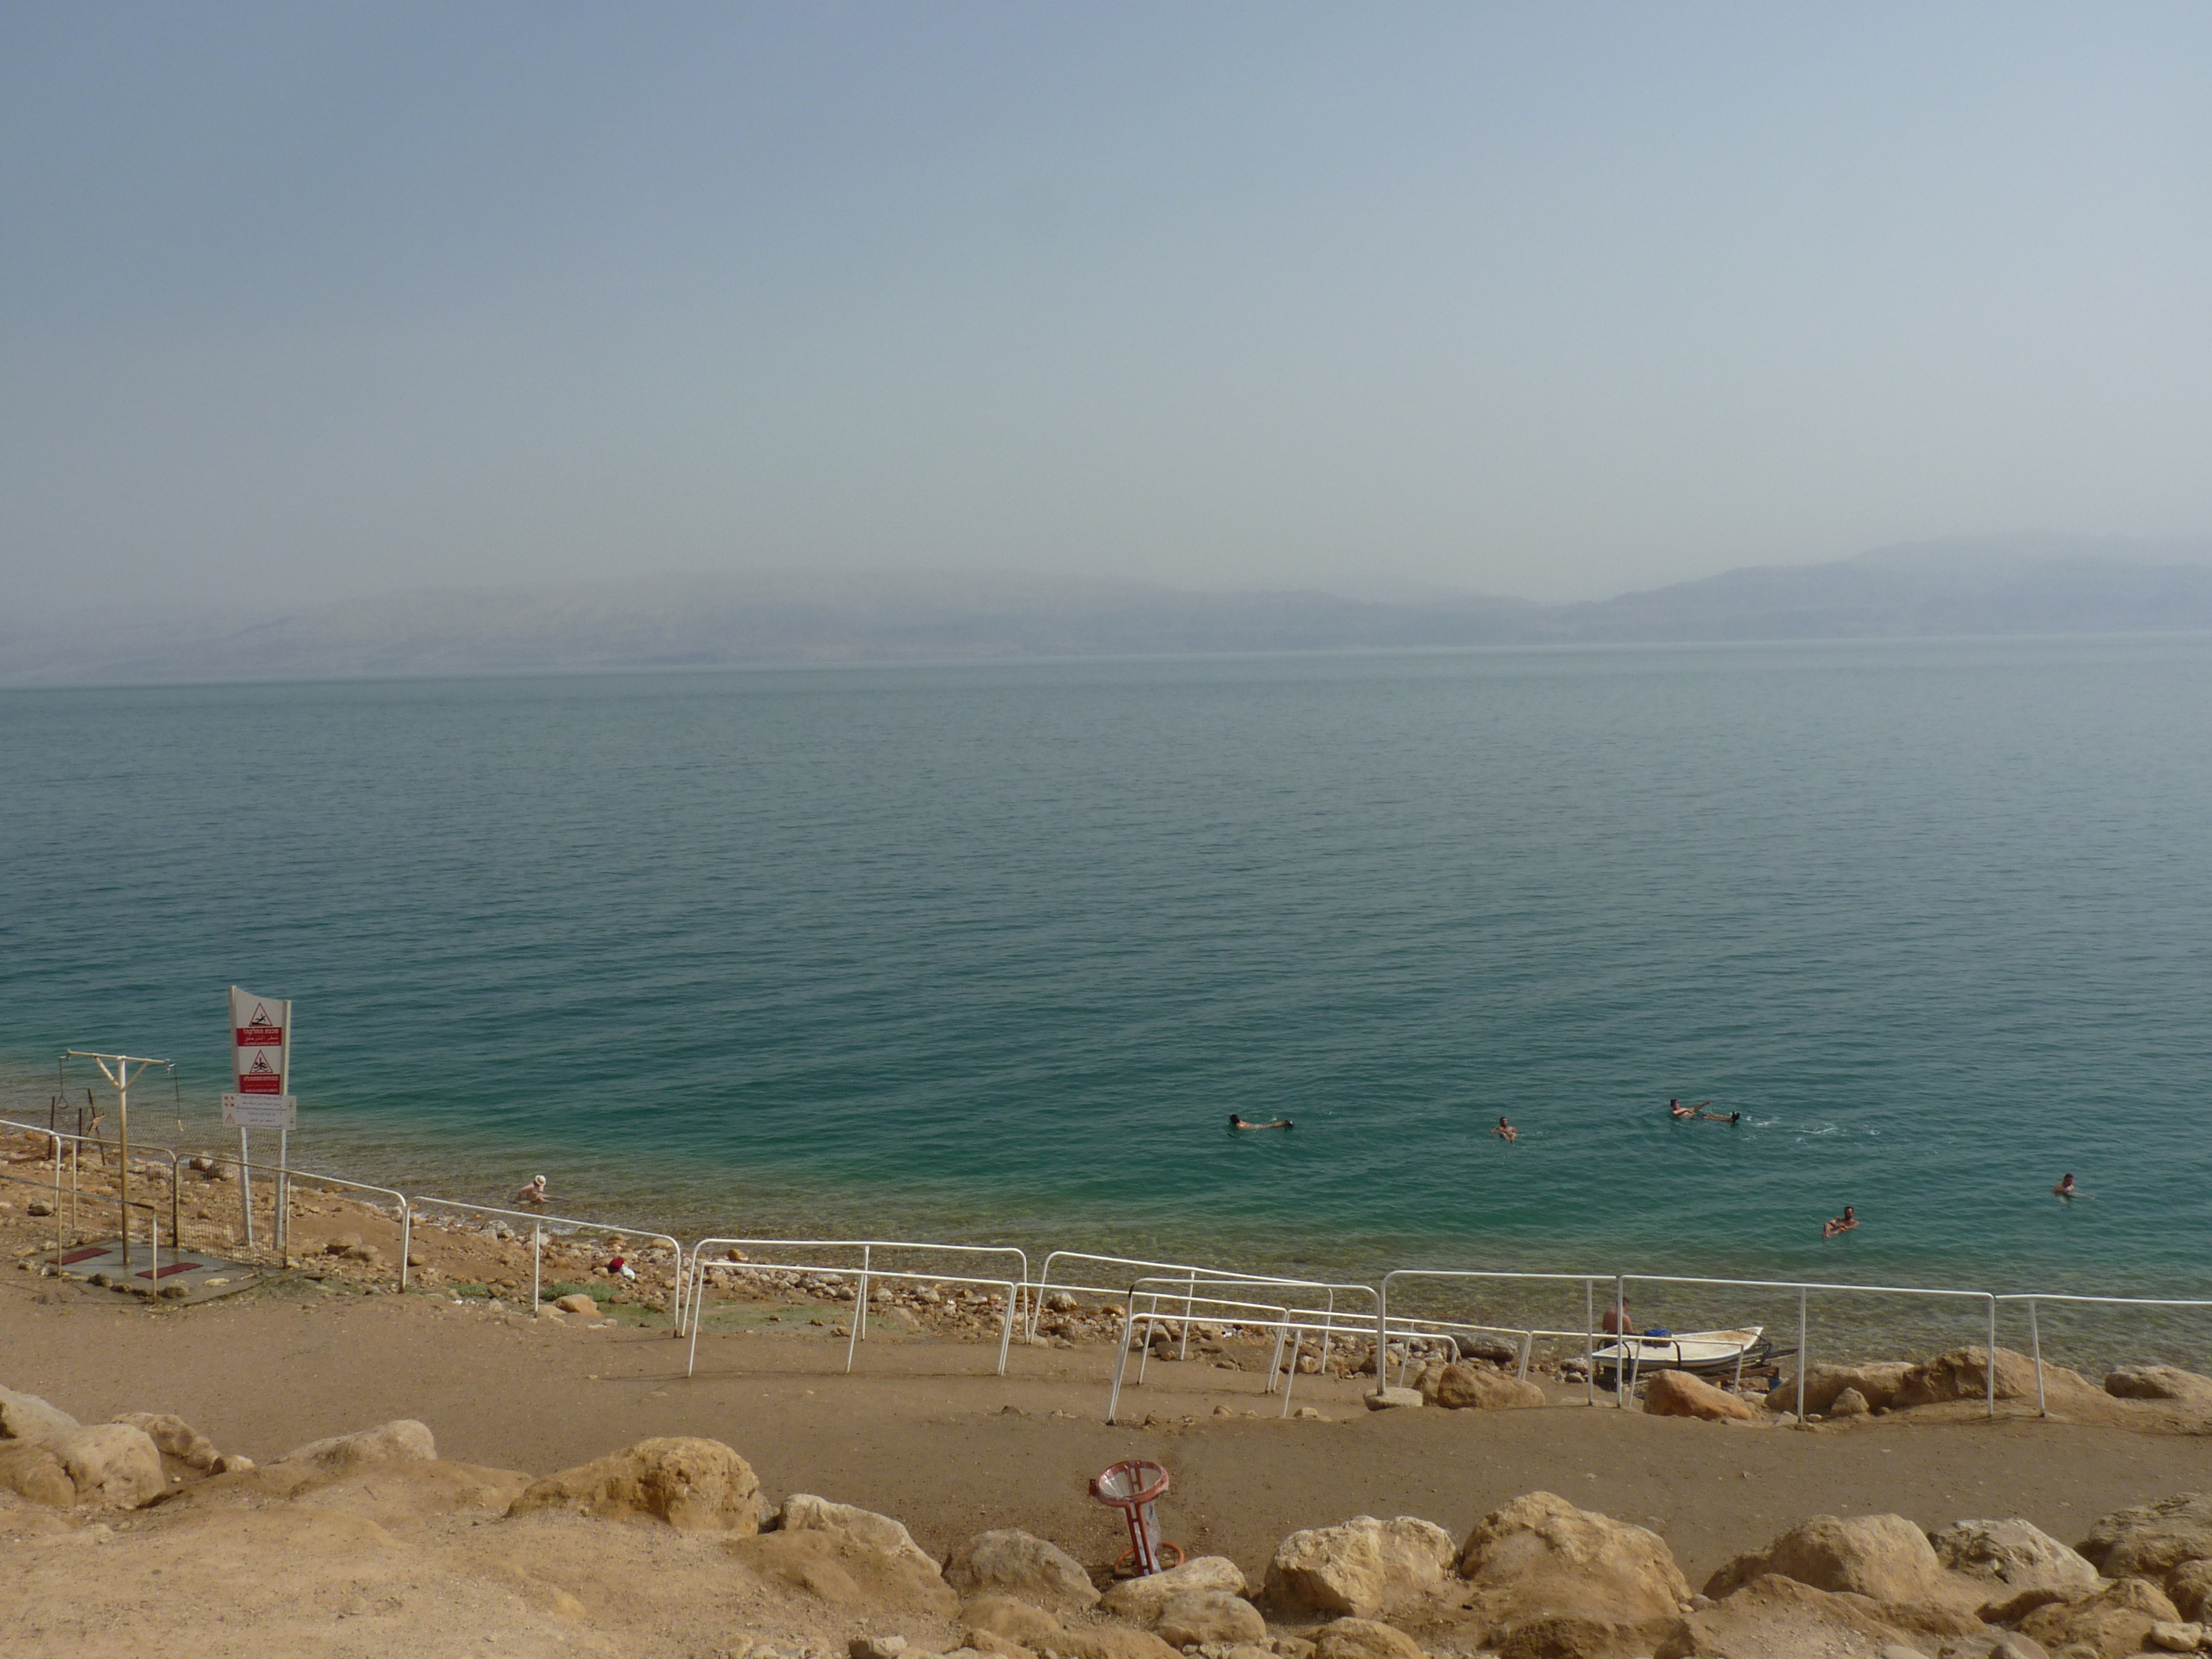 5. Dicas essenciais para uma viagem ao Mar Morto: recomendações úteis para tornar sua visita inesquecível!